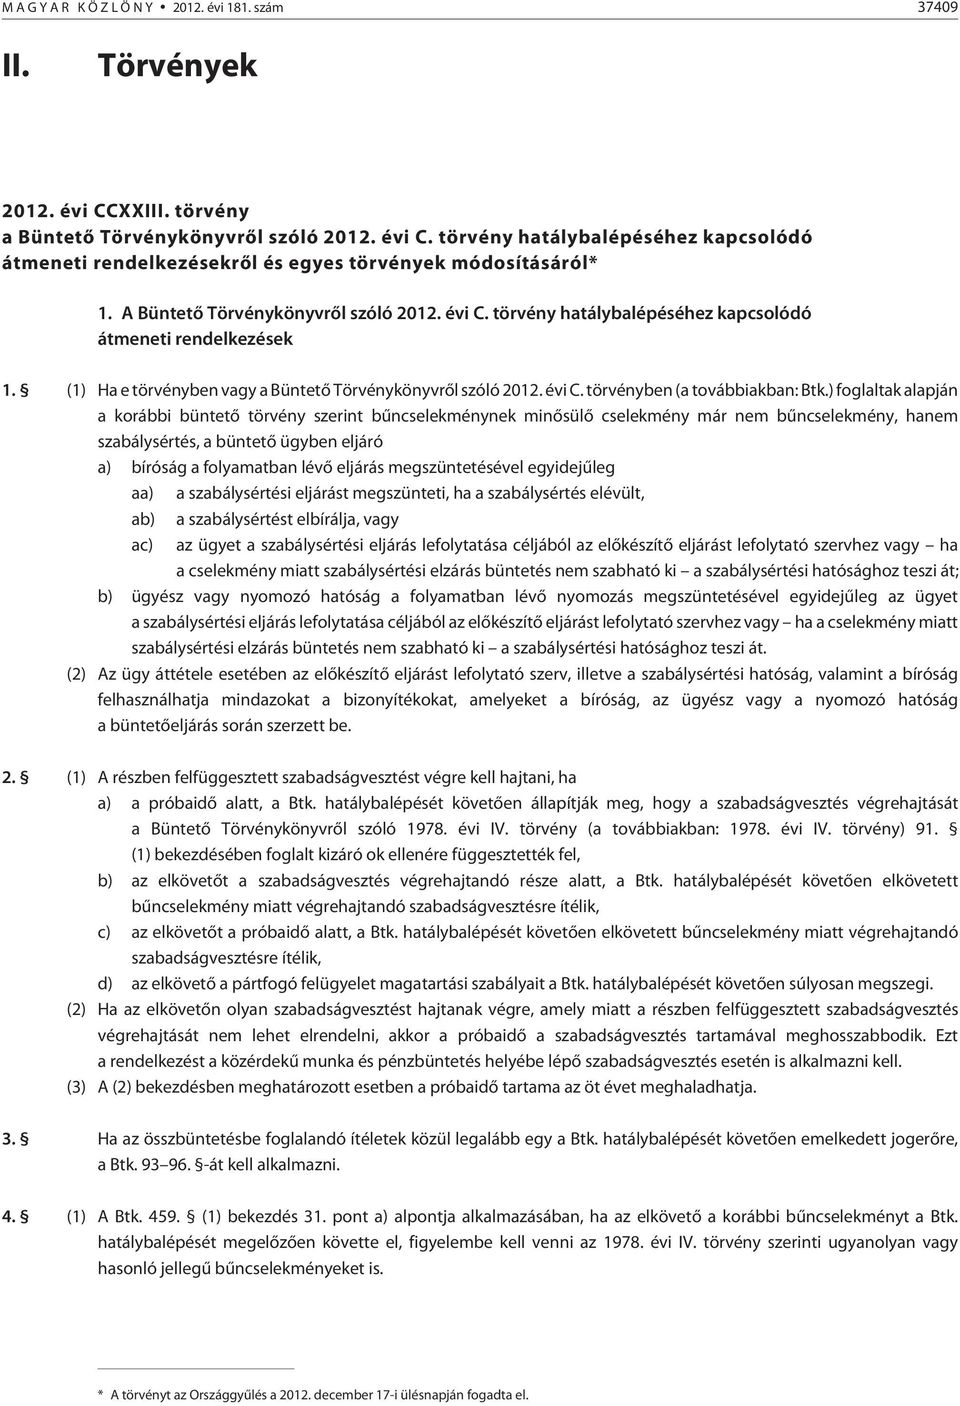 törvény hatálybalépéséhez kapcsolódó átmeneti rendelkezések 1. (1) Ha e törvényben vagy a Büntetõ Törvénykönyvrõl szóló 2012. évi C. törvényben (a továbbiakban: Btk.